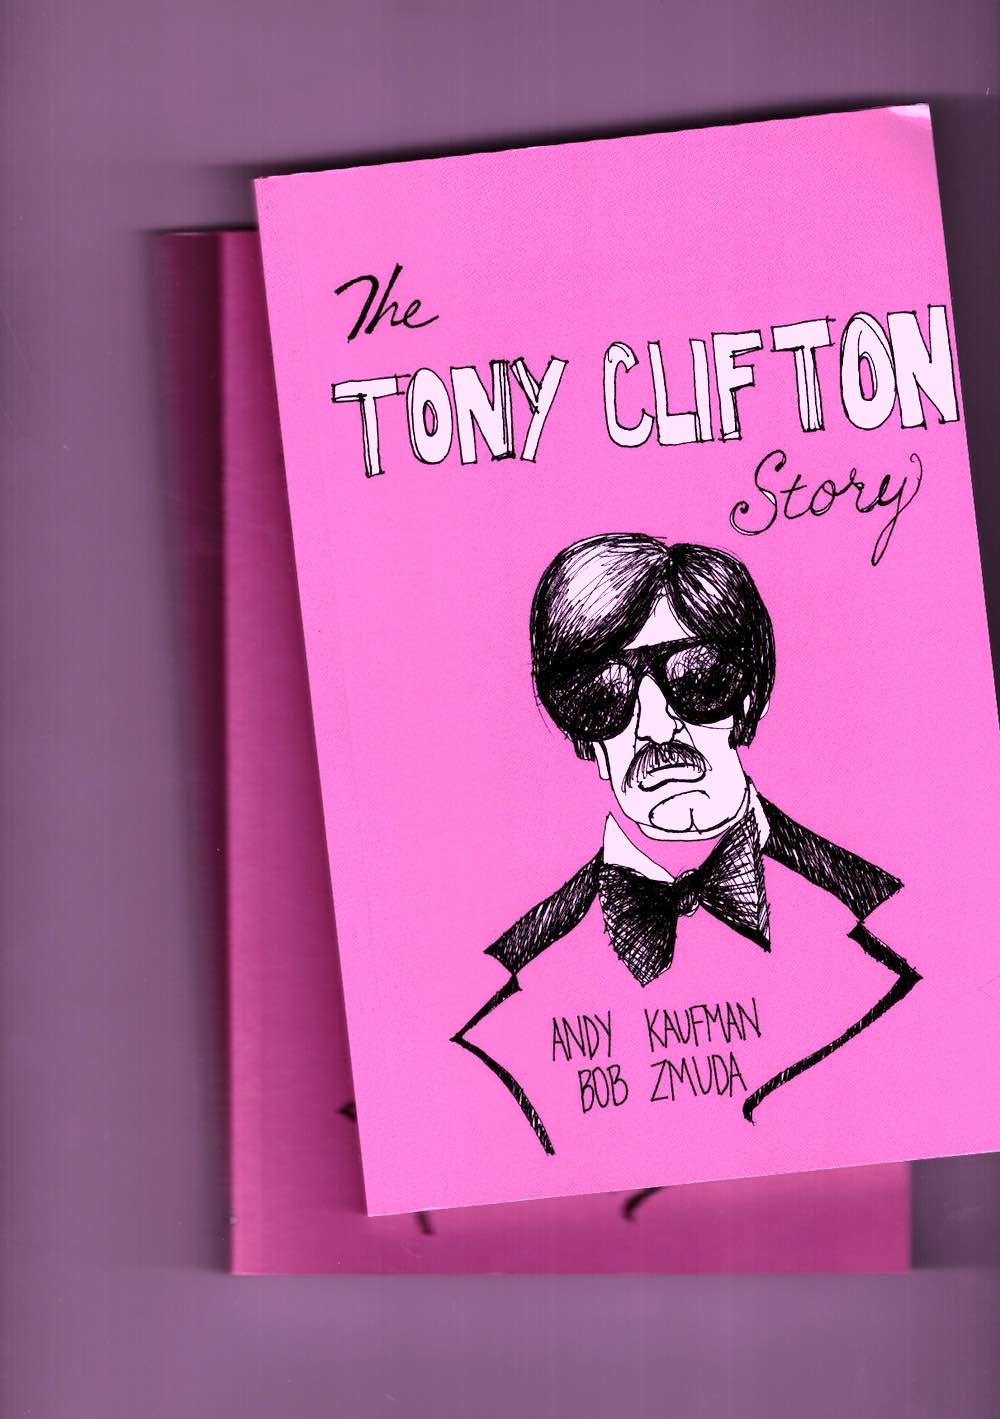 KAUFMAN, Andy; ZMUDA, Bob - The Tony Clifton Story